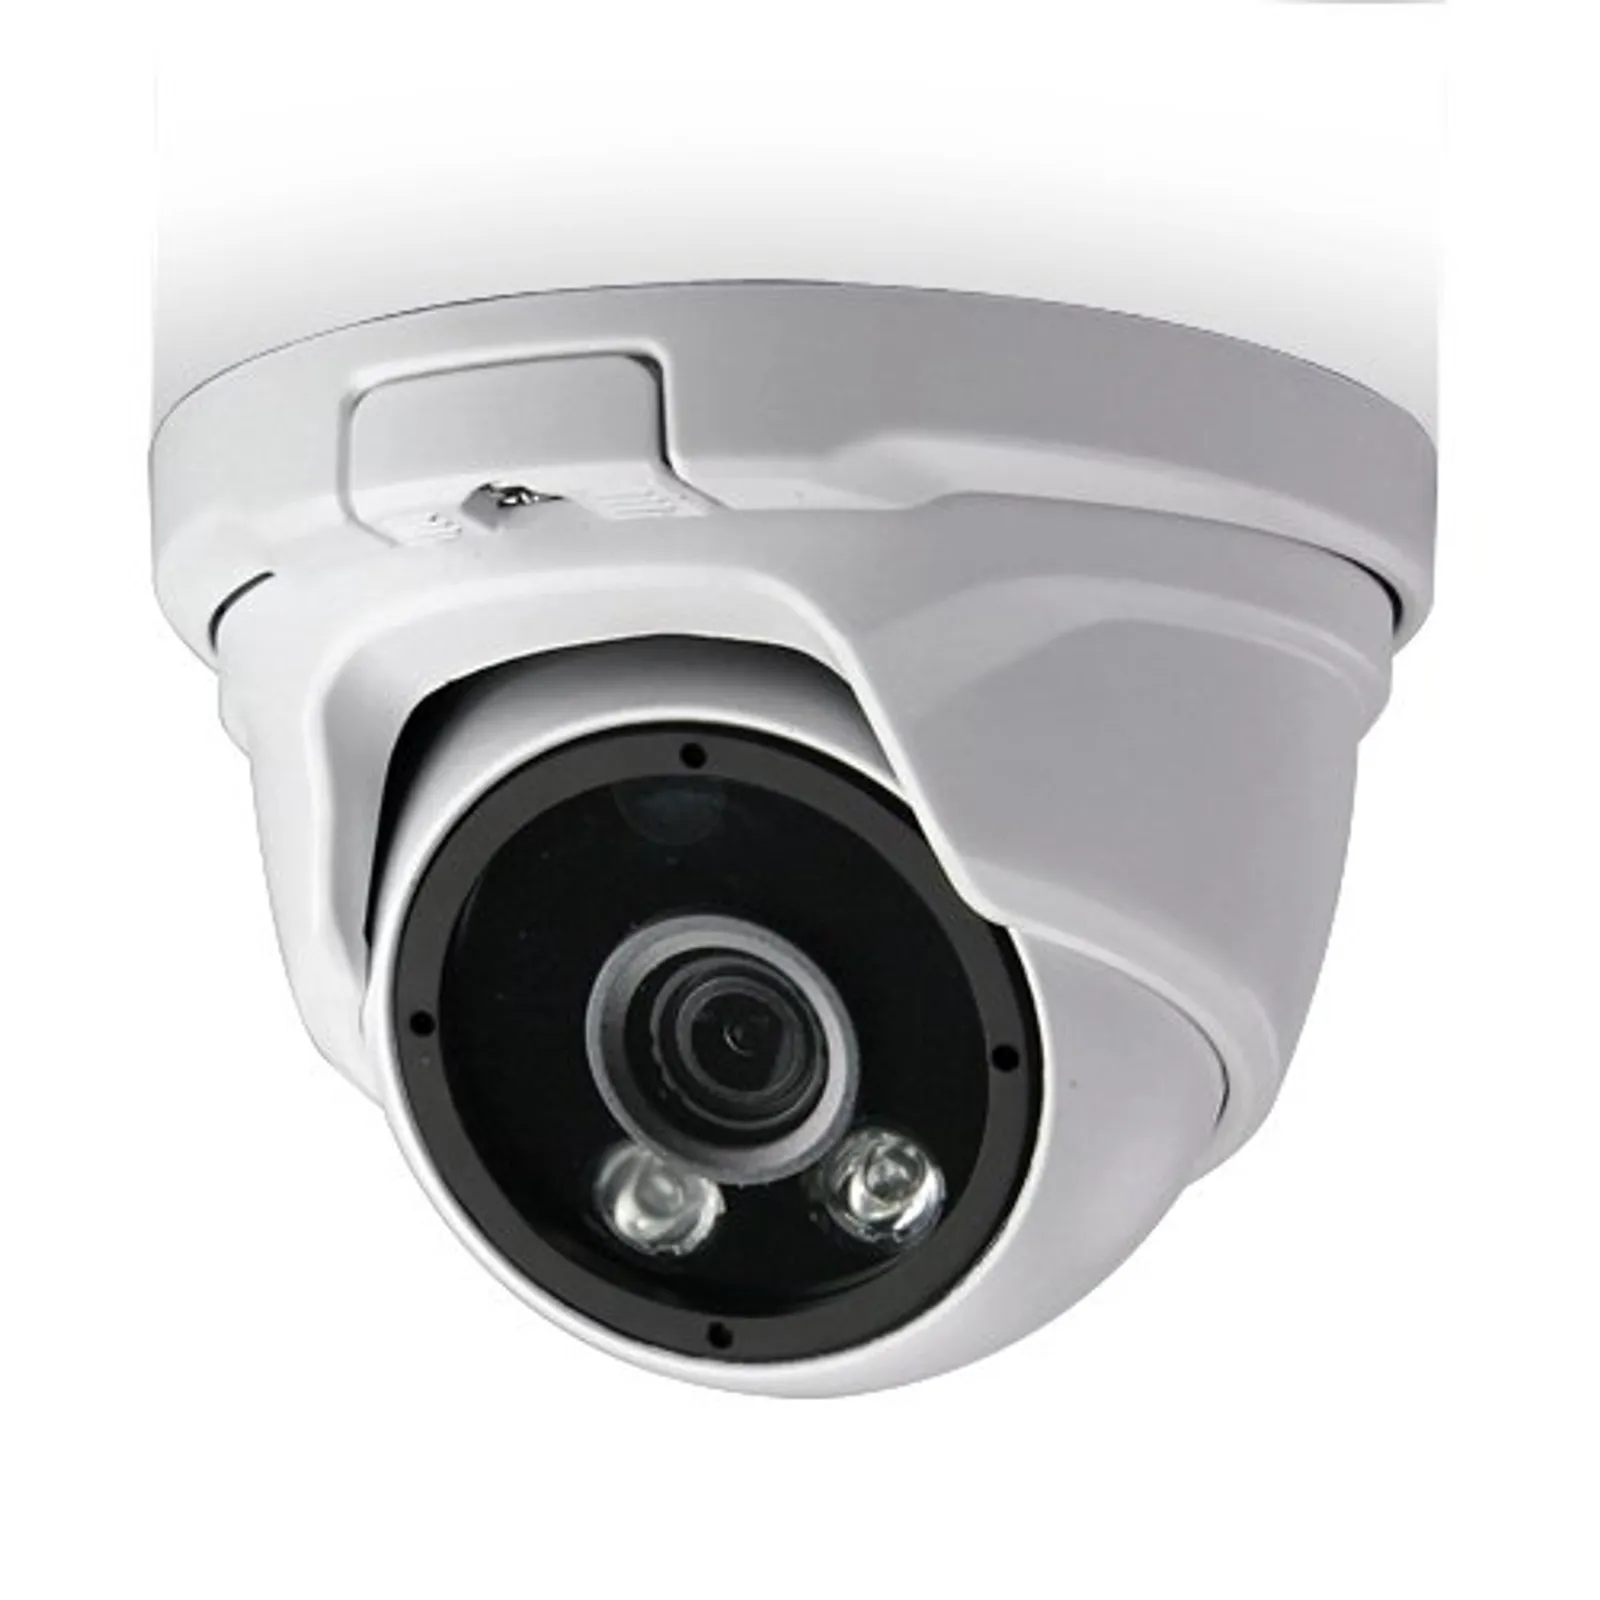 10 Rekomendasi CCTV di Bawah Rp1 Juta, untuk Proteksi di Rumah